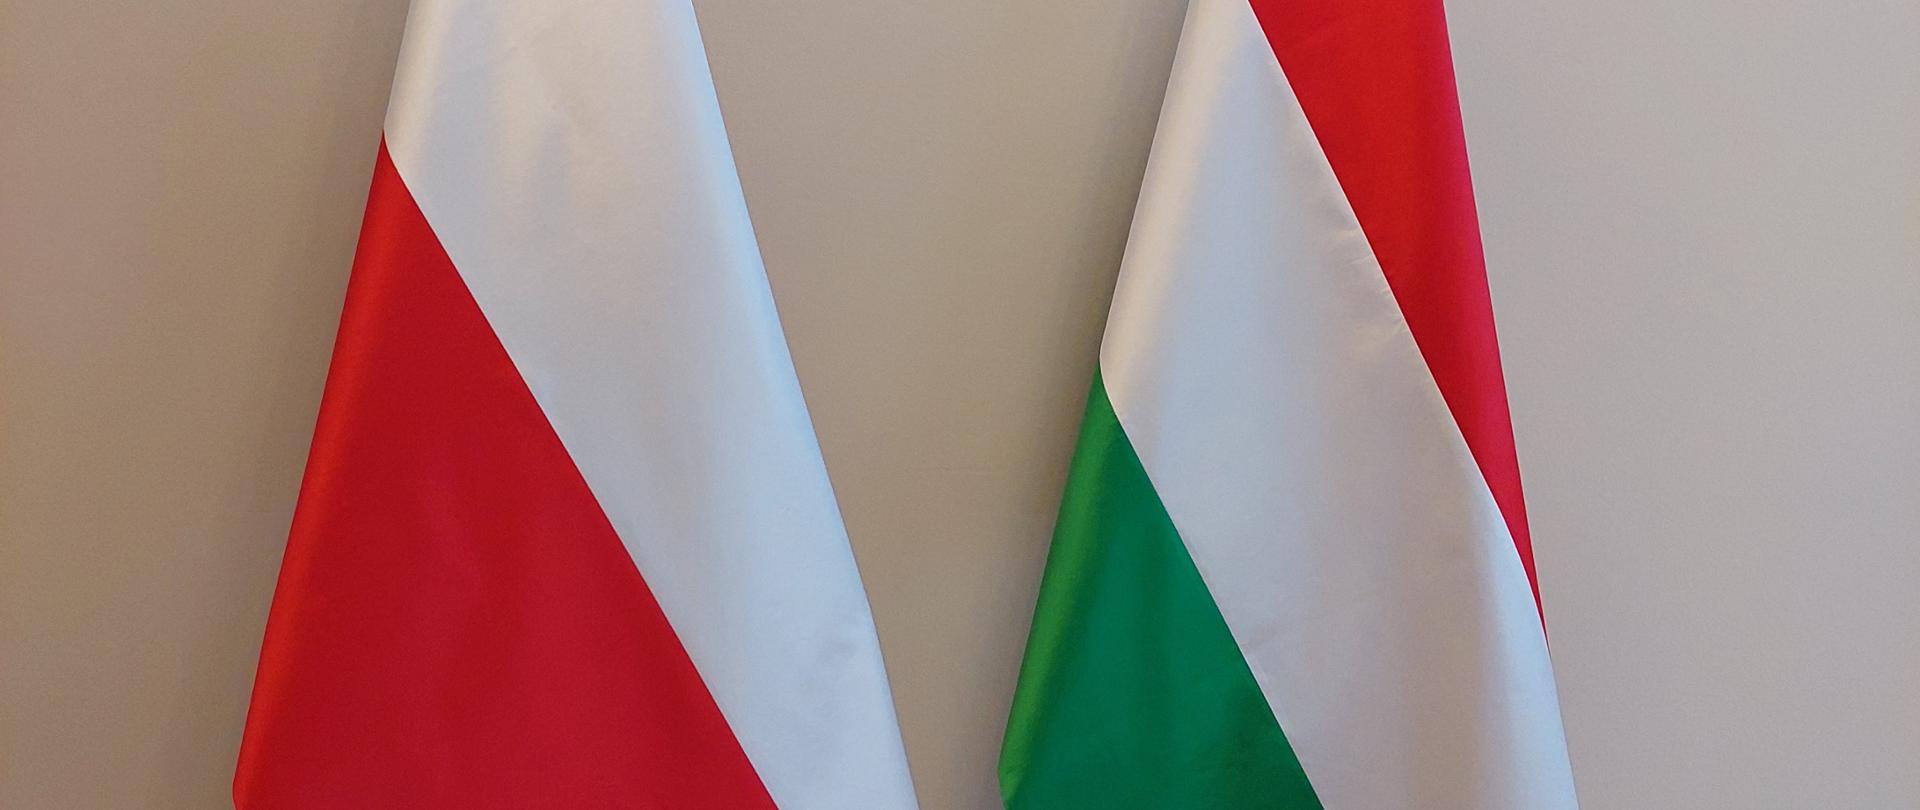 Flagi Polski i Węgier